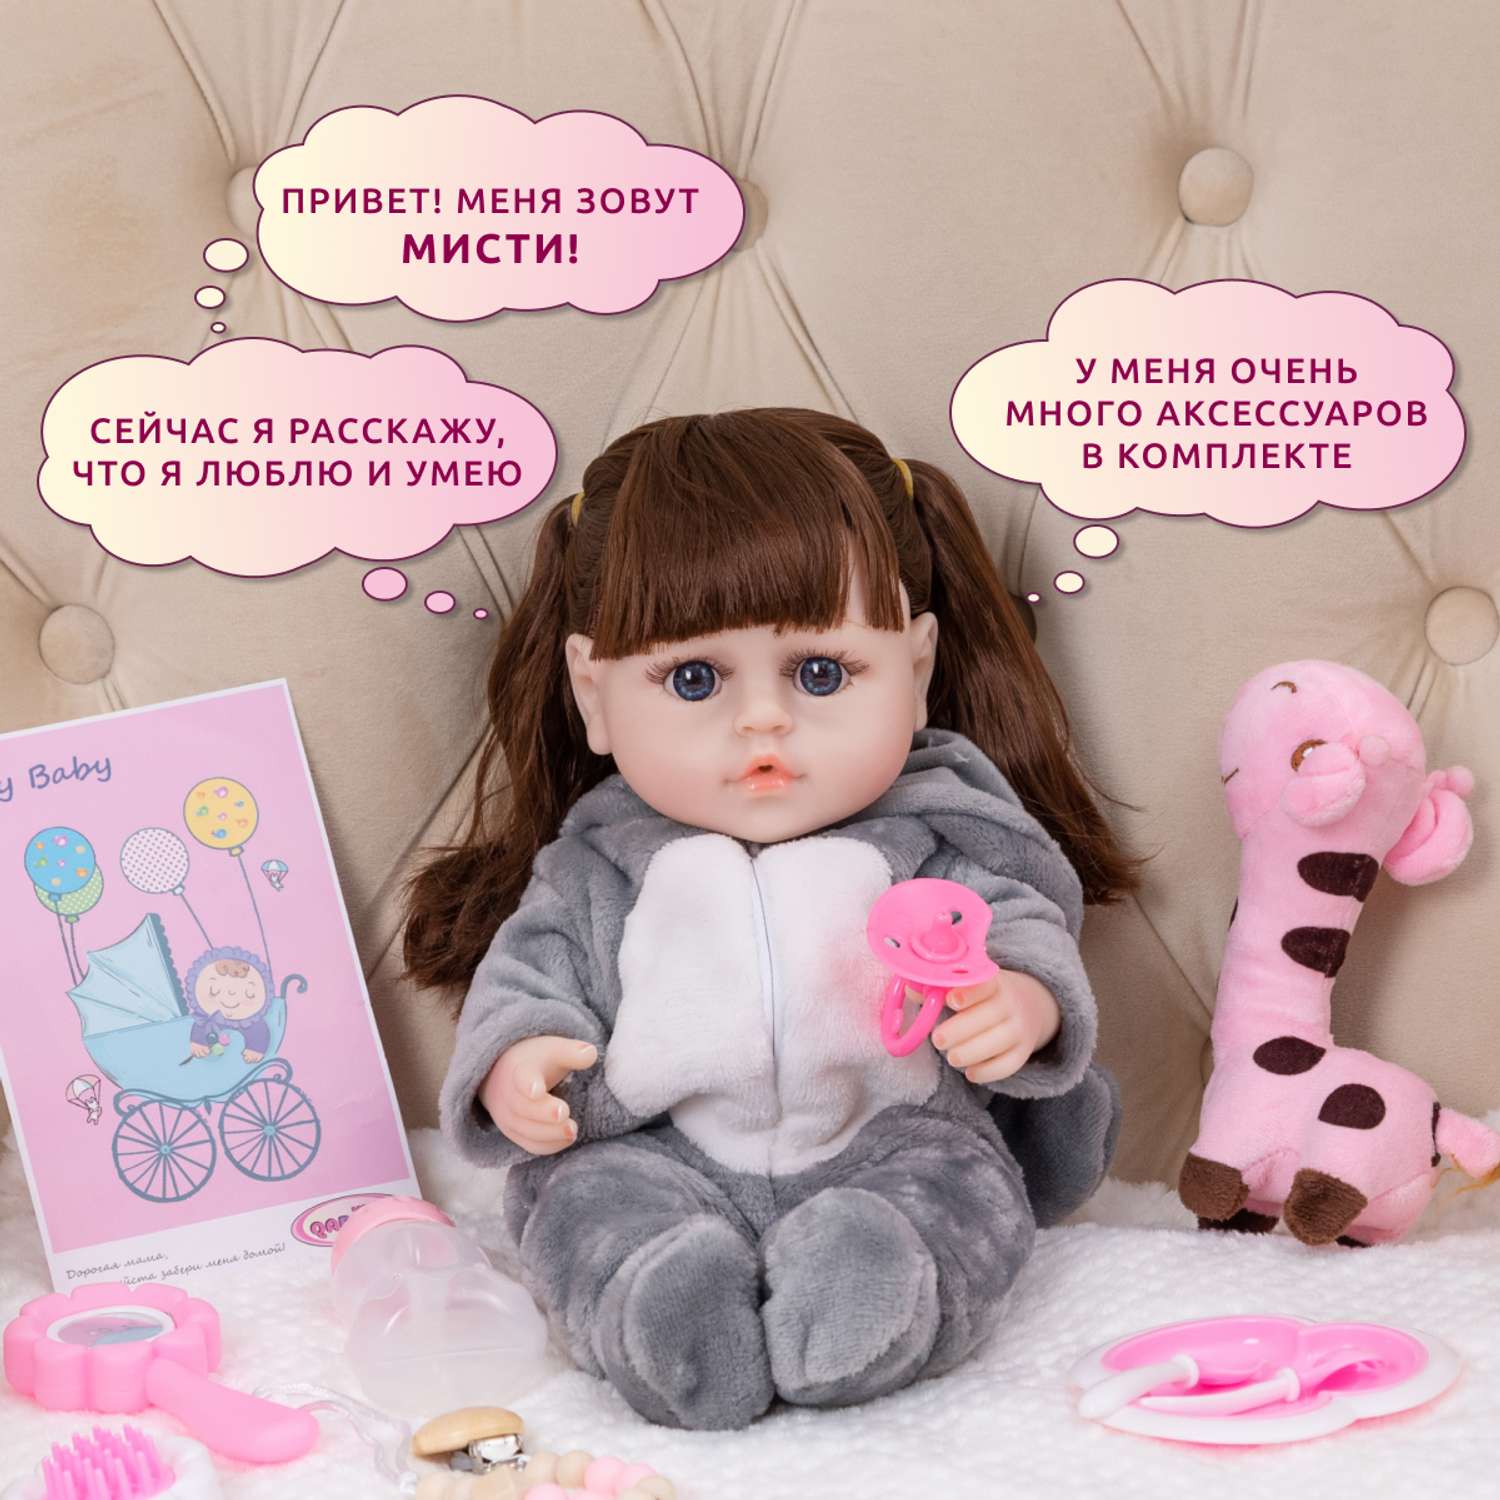 Кукла Реборн QA BABY Мисти девочка интерактивная Пупс набор игрушки для ванной для девочки 38 см 3808 - фото 2